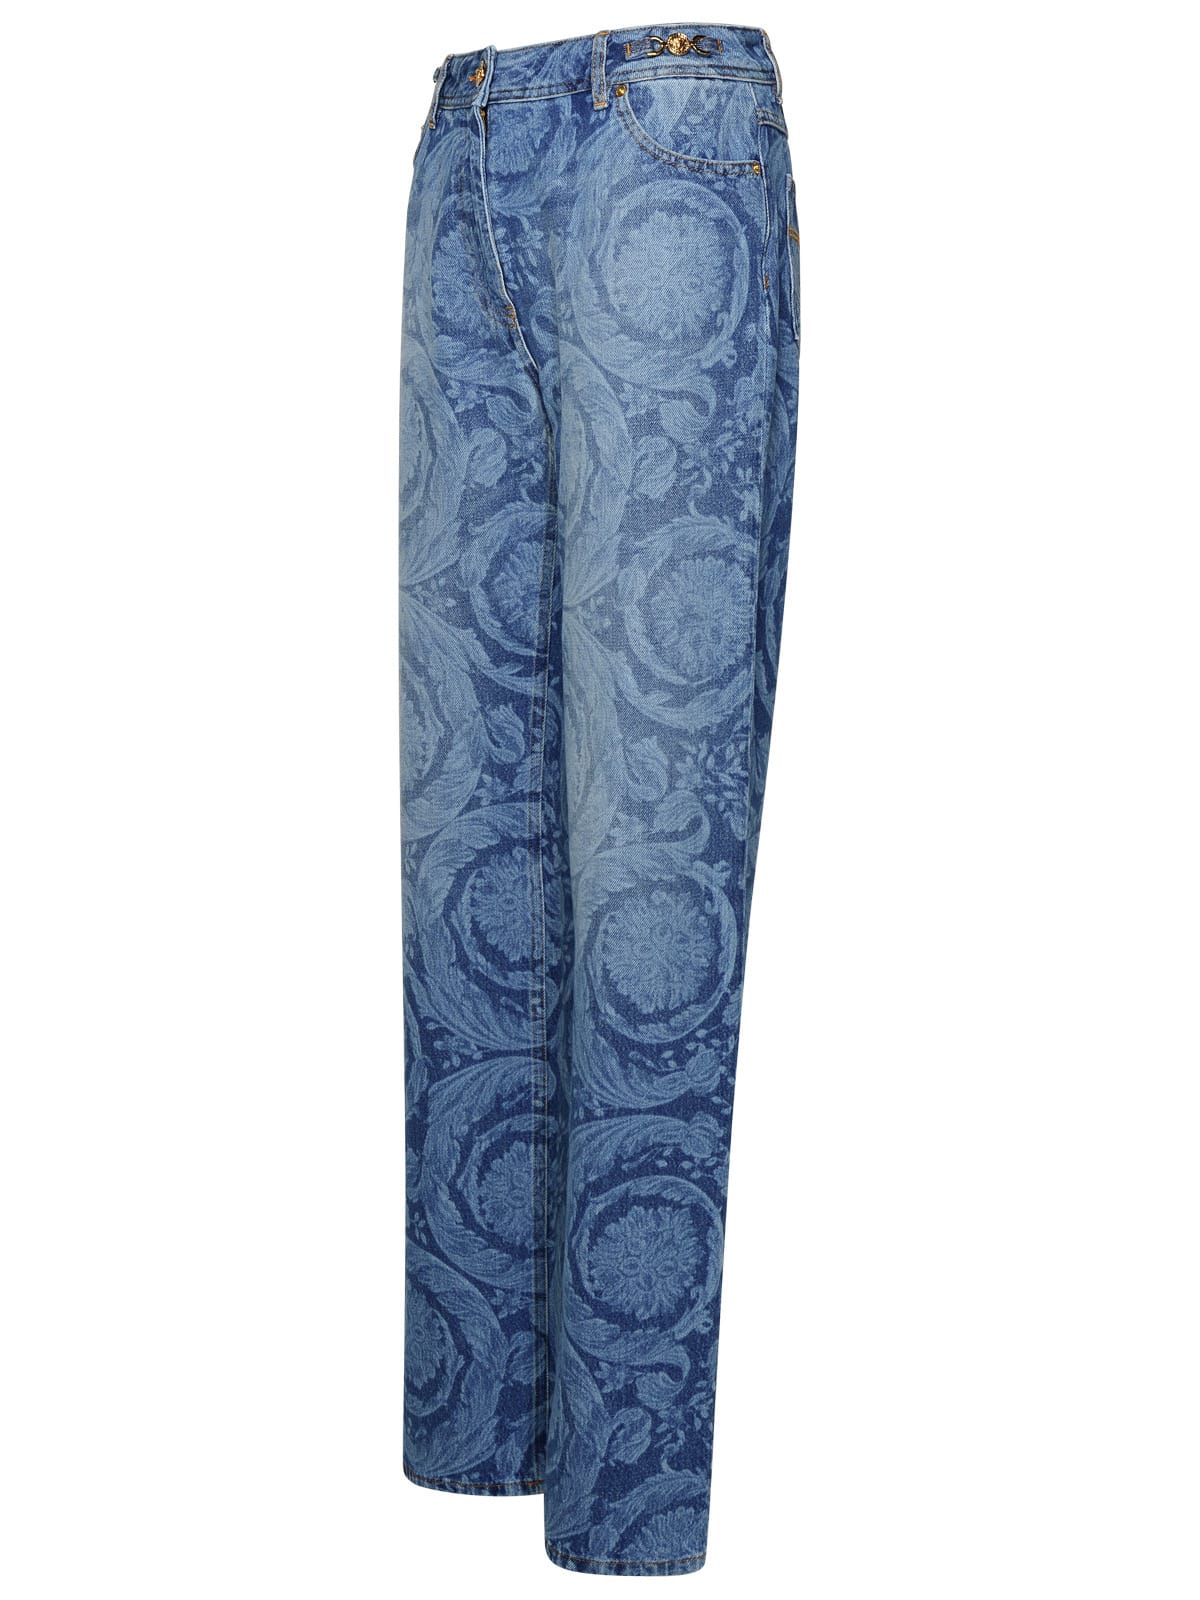 Shop Versace Barocco Blue Cotton Jeans